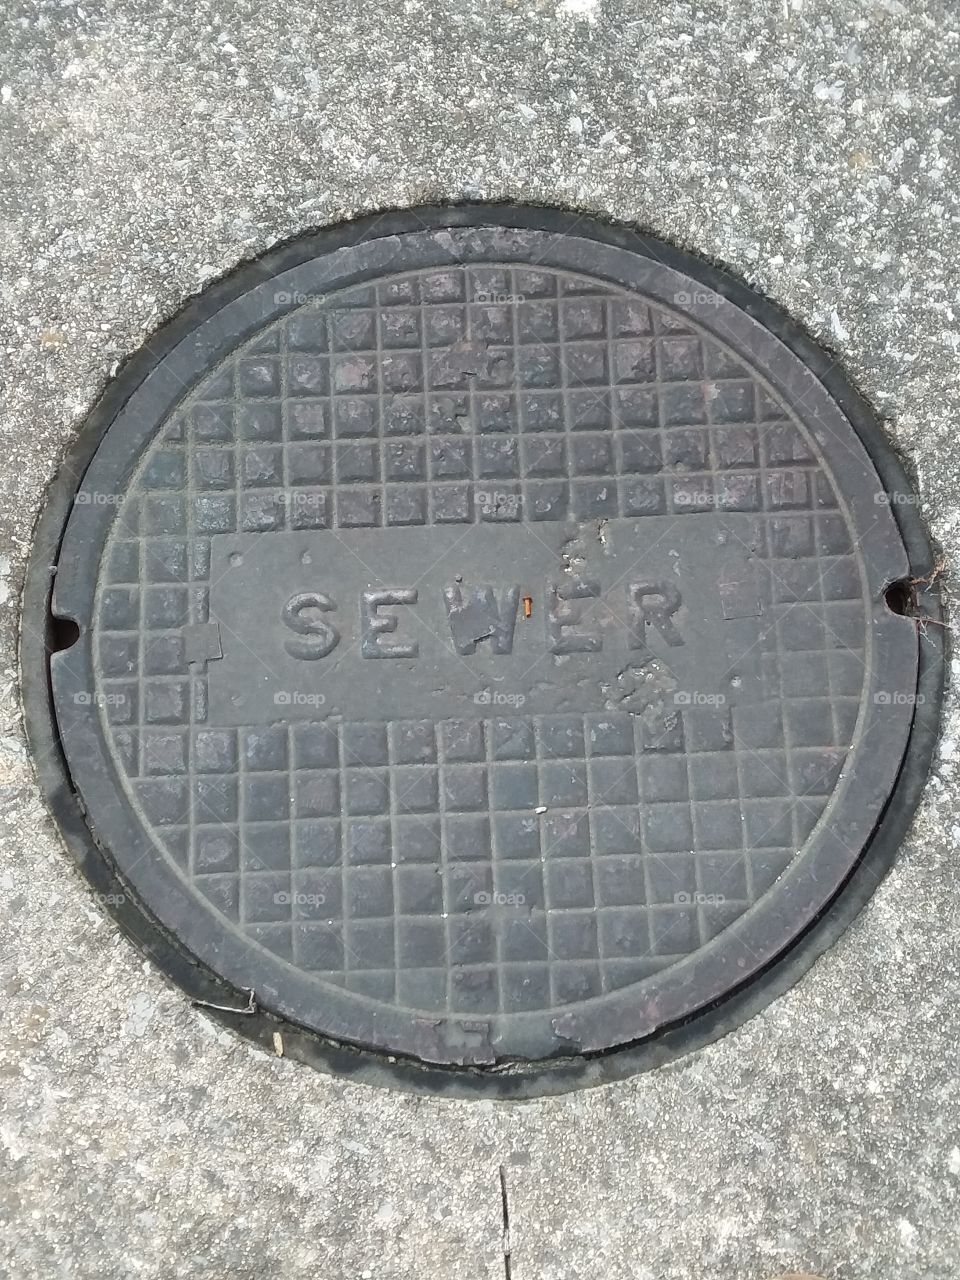 Sewer 2